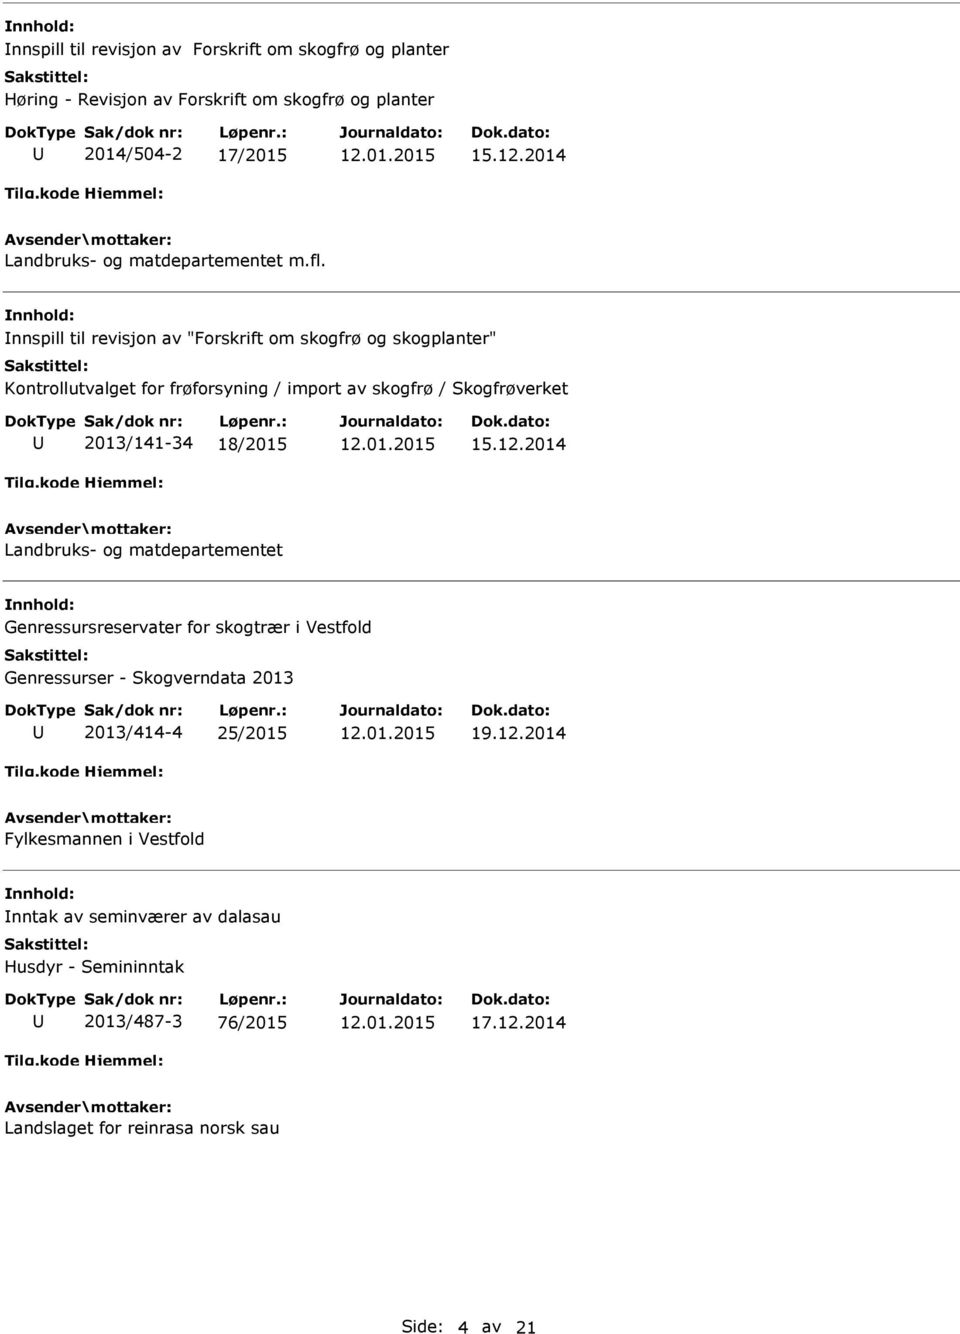 nnspill til revisjon av "Forskrift om skogfrø og skogplanter" Kontrollutvalget for frøforsyning / import av skogfrø / Skogfrøverket 2013/141-34 18/2015 15.12.